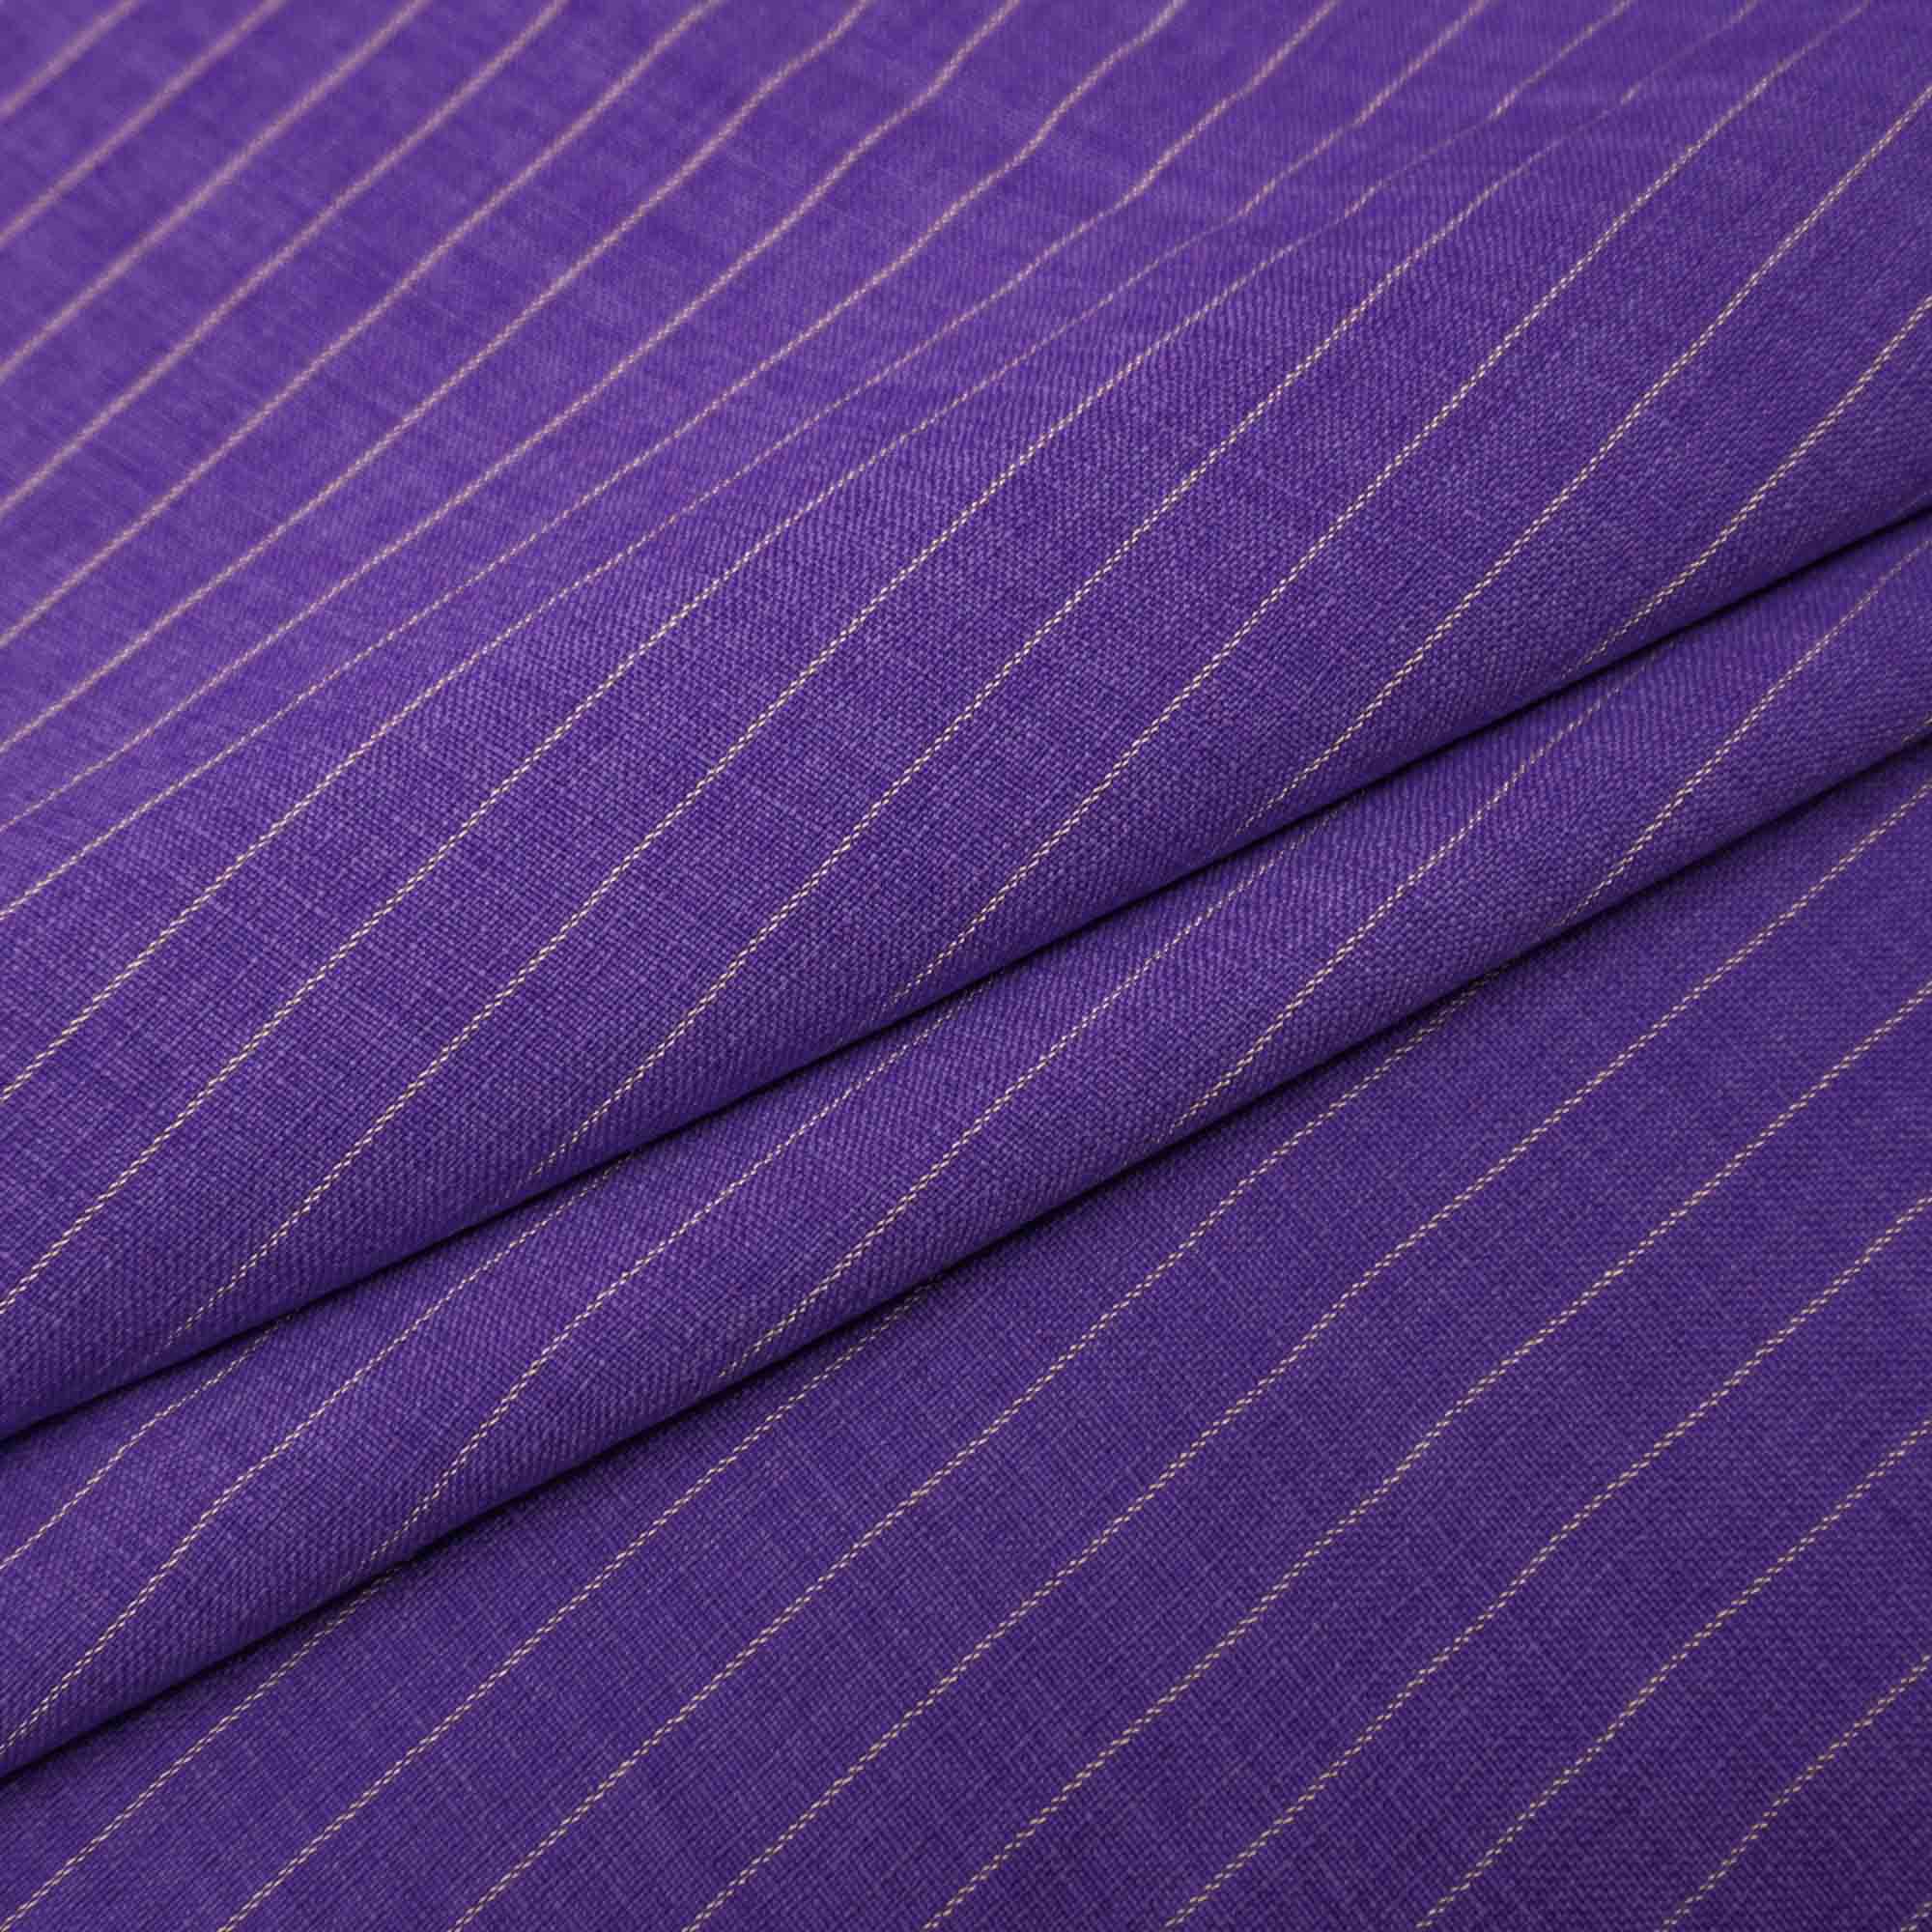 Tecido poliester com textura de linho risca de giz violeta